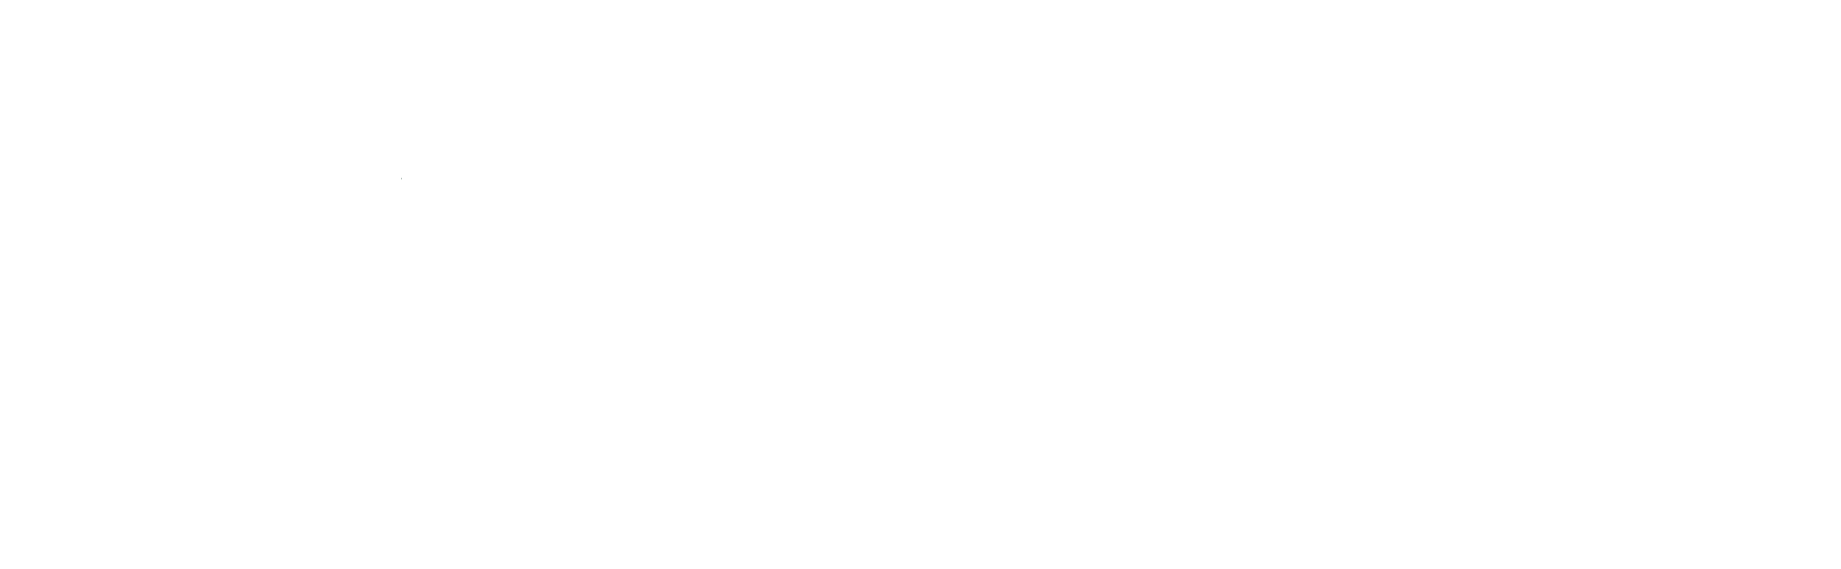 Polska w ruchu. Infrastruktura. Logistyka. Transport.